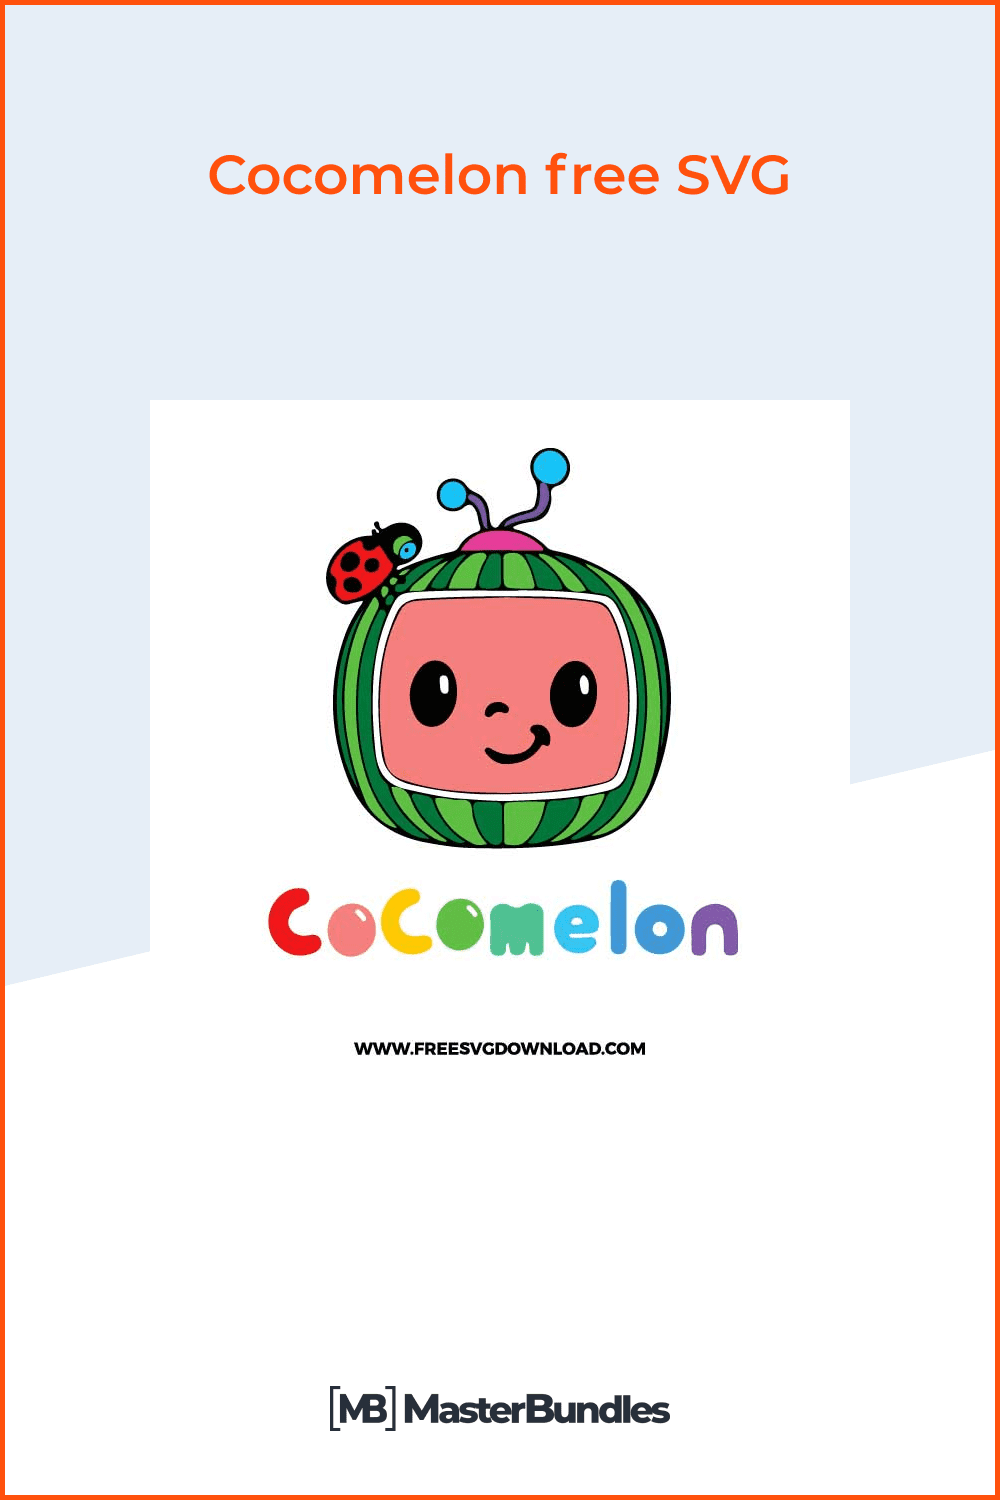 Cocomelon free SVG.